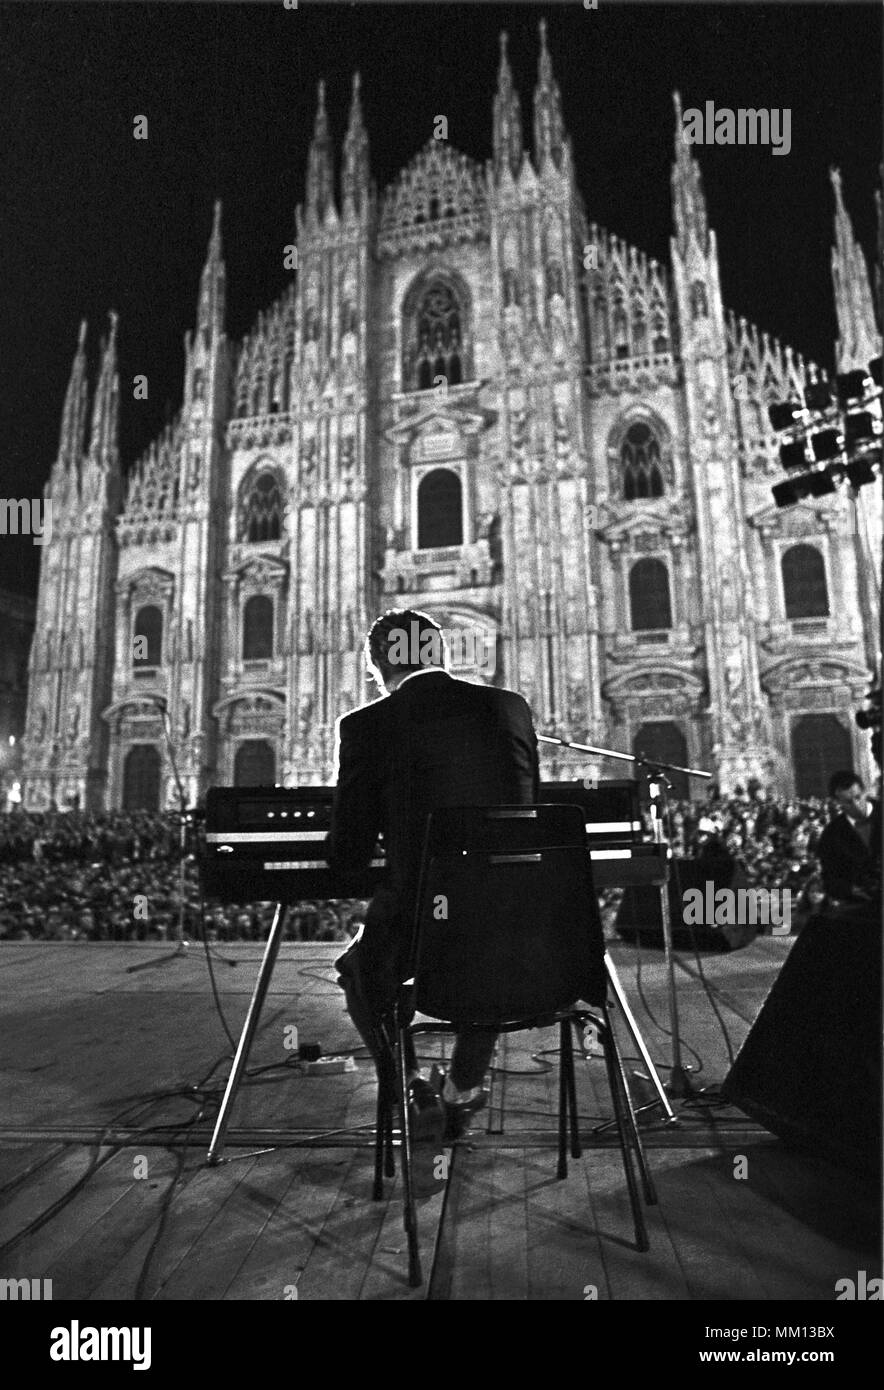 El músico y escritor de canciones ENZO JANNACCI durante un espectáculo público en Milán (Italia), septiembre de 1986 Foto de stock